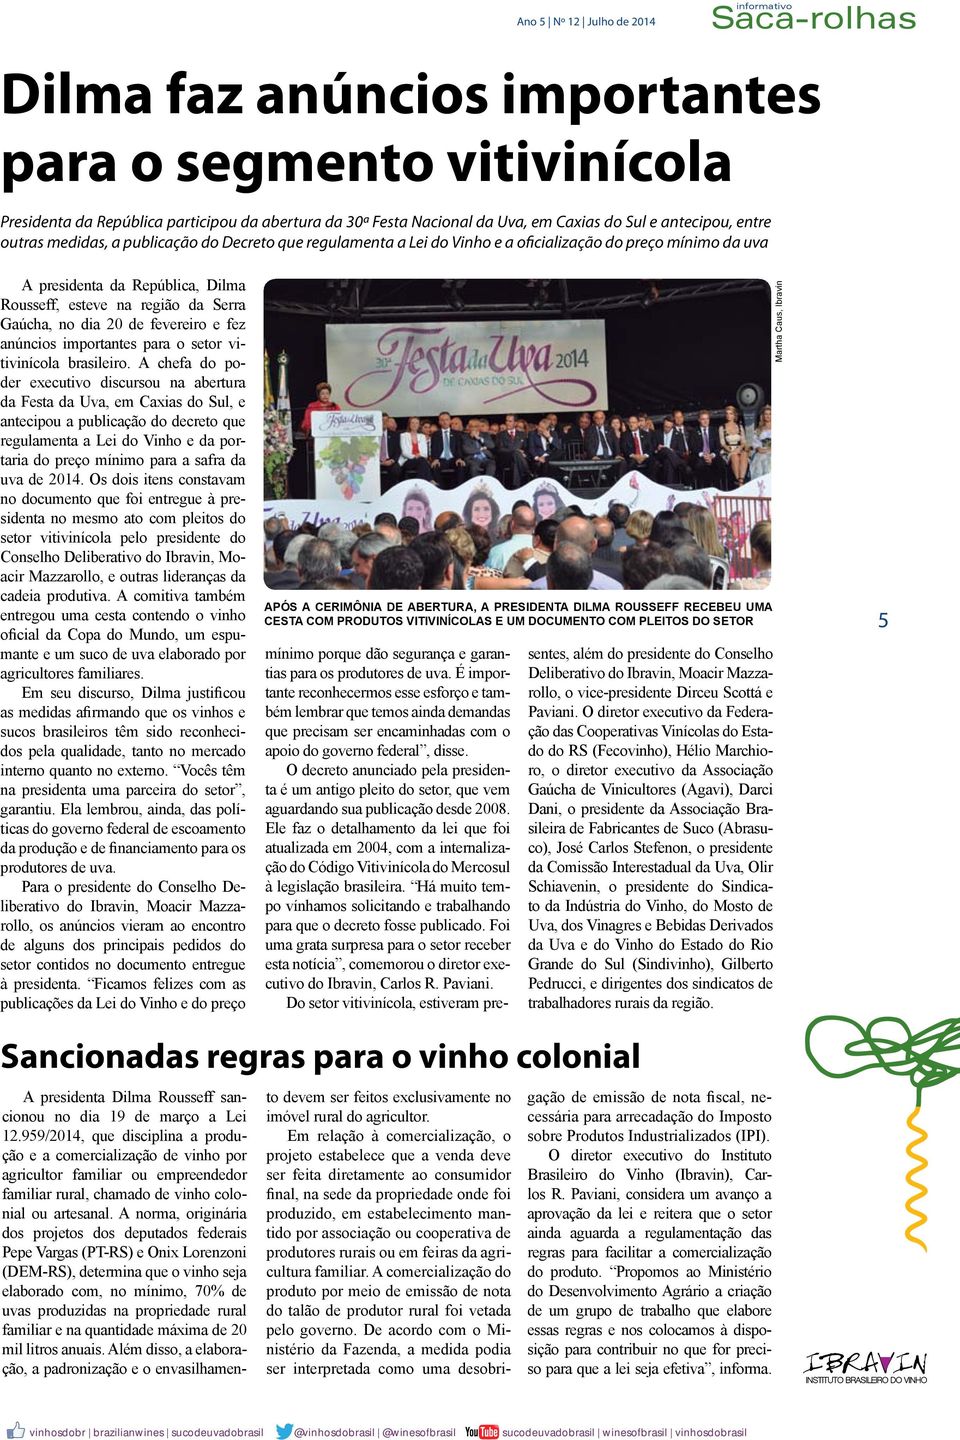 Gaúcha, no dia 20 de fevereiro e fez anúncios importantes para o setor vitivinícola brasileiro.